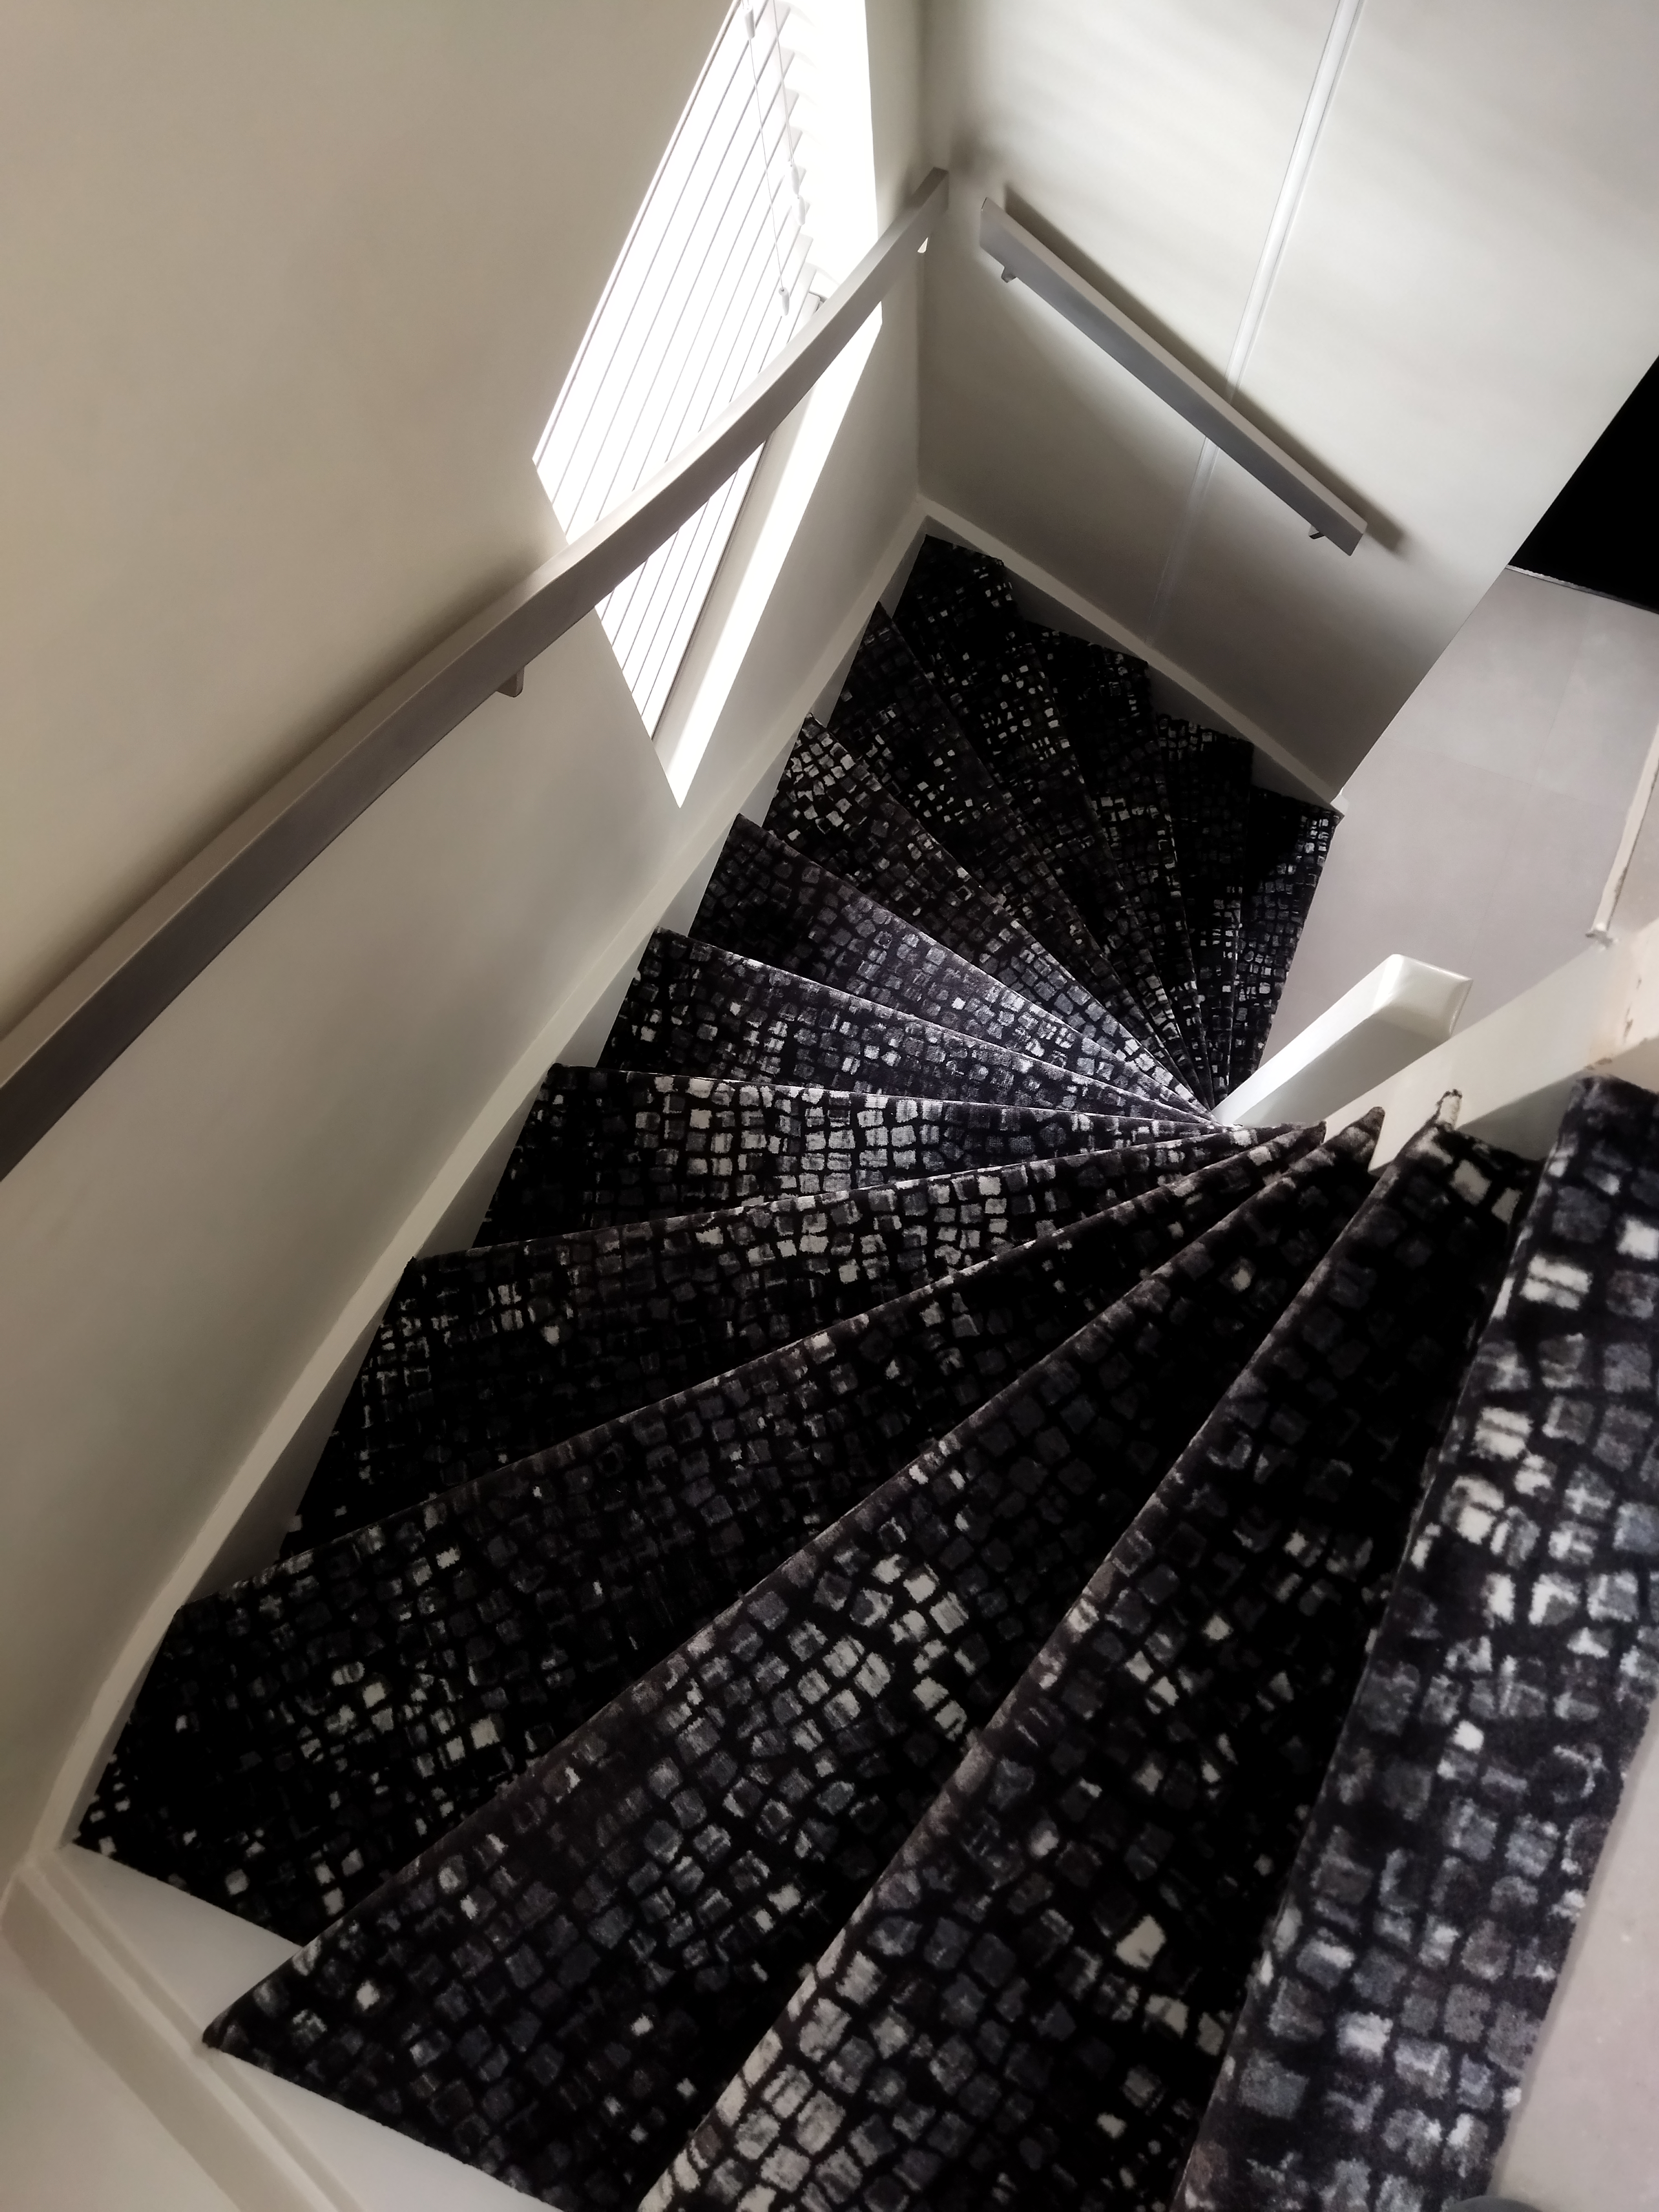 Bekijk trapbekleding tapijt, vinyl, marmoleum of traploper in onze showroom